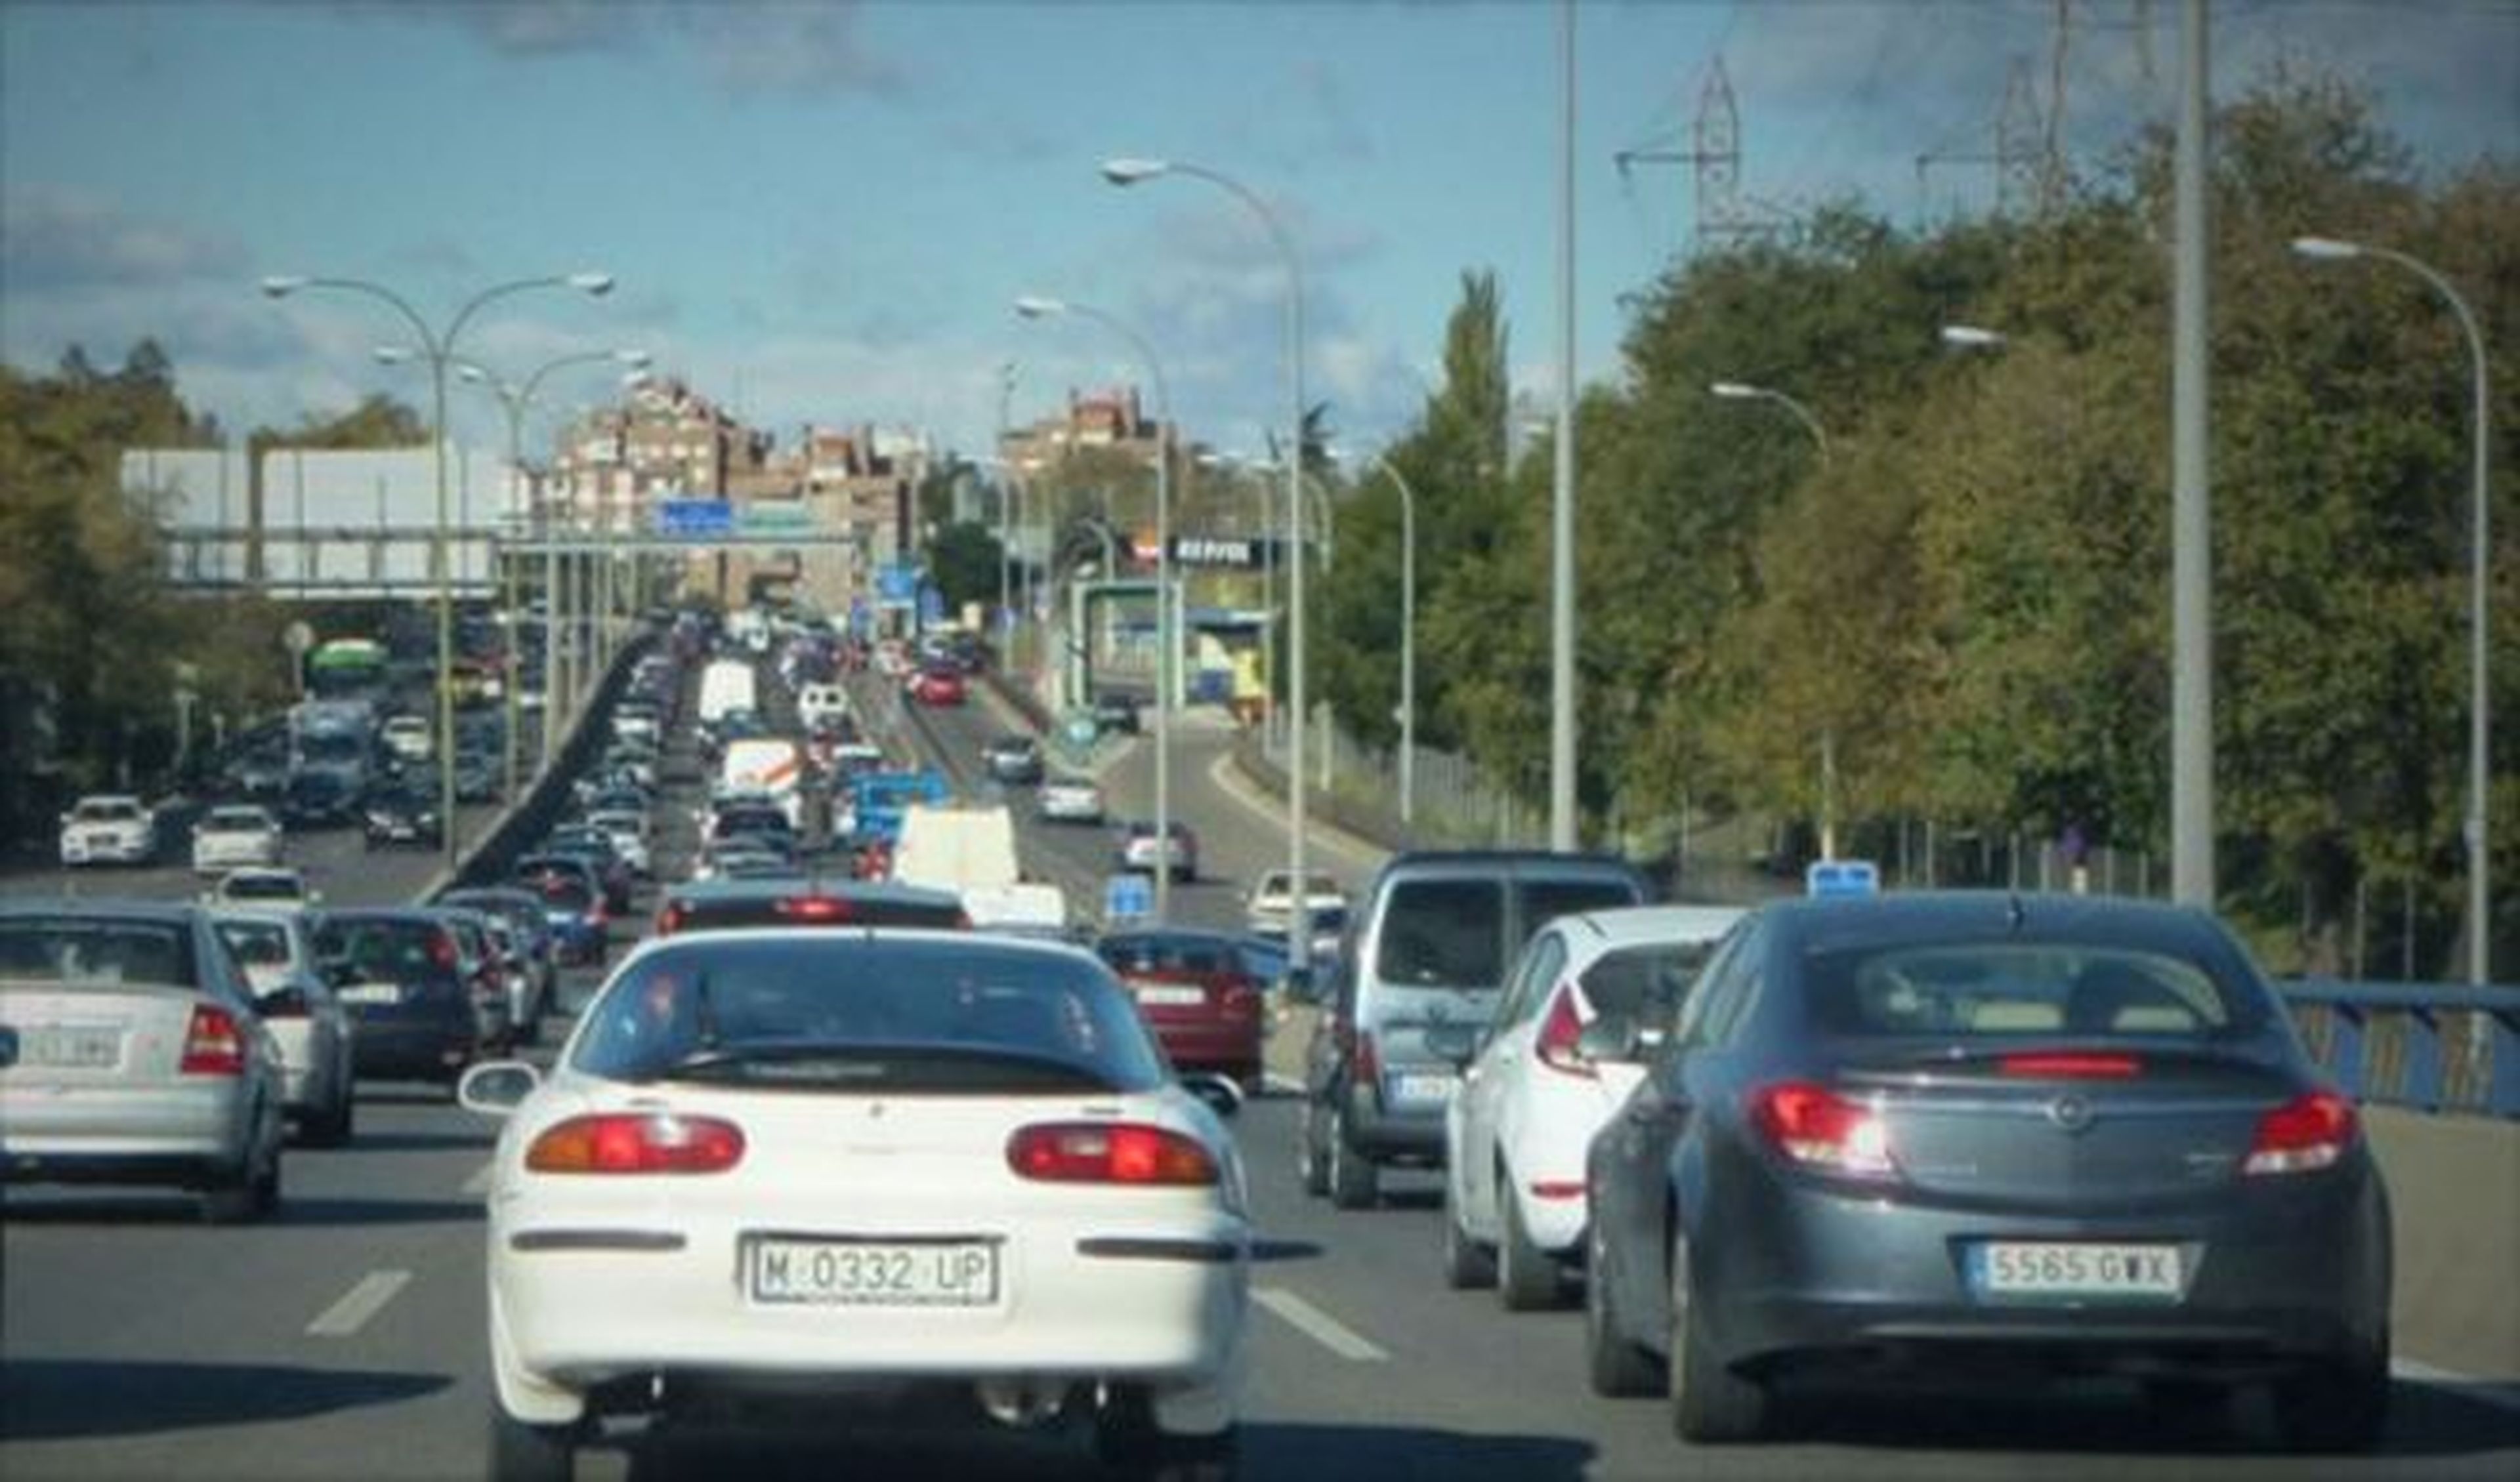 Madrid prohíbe aparcar y limita la velocidad en la M-30